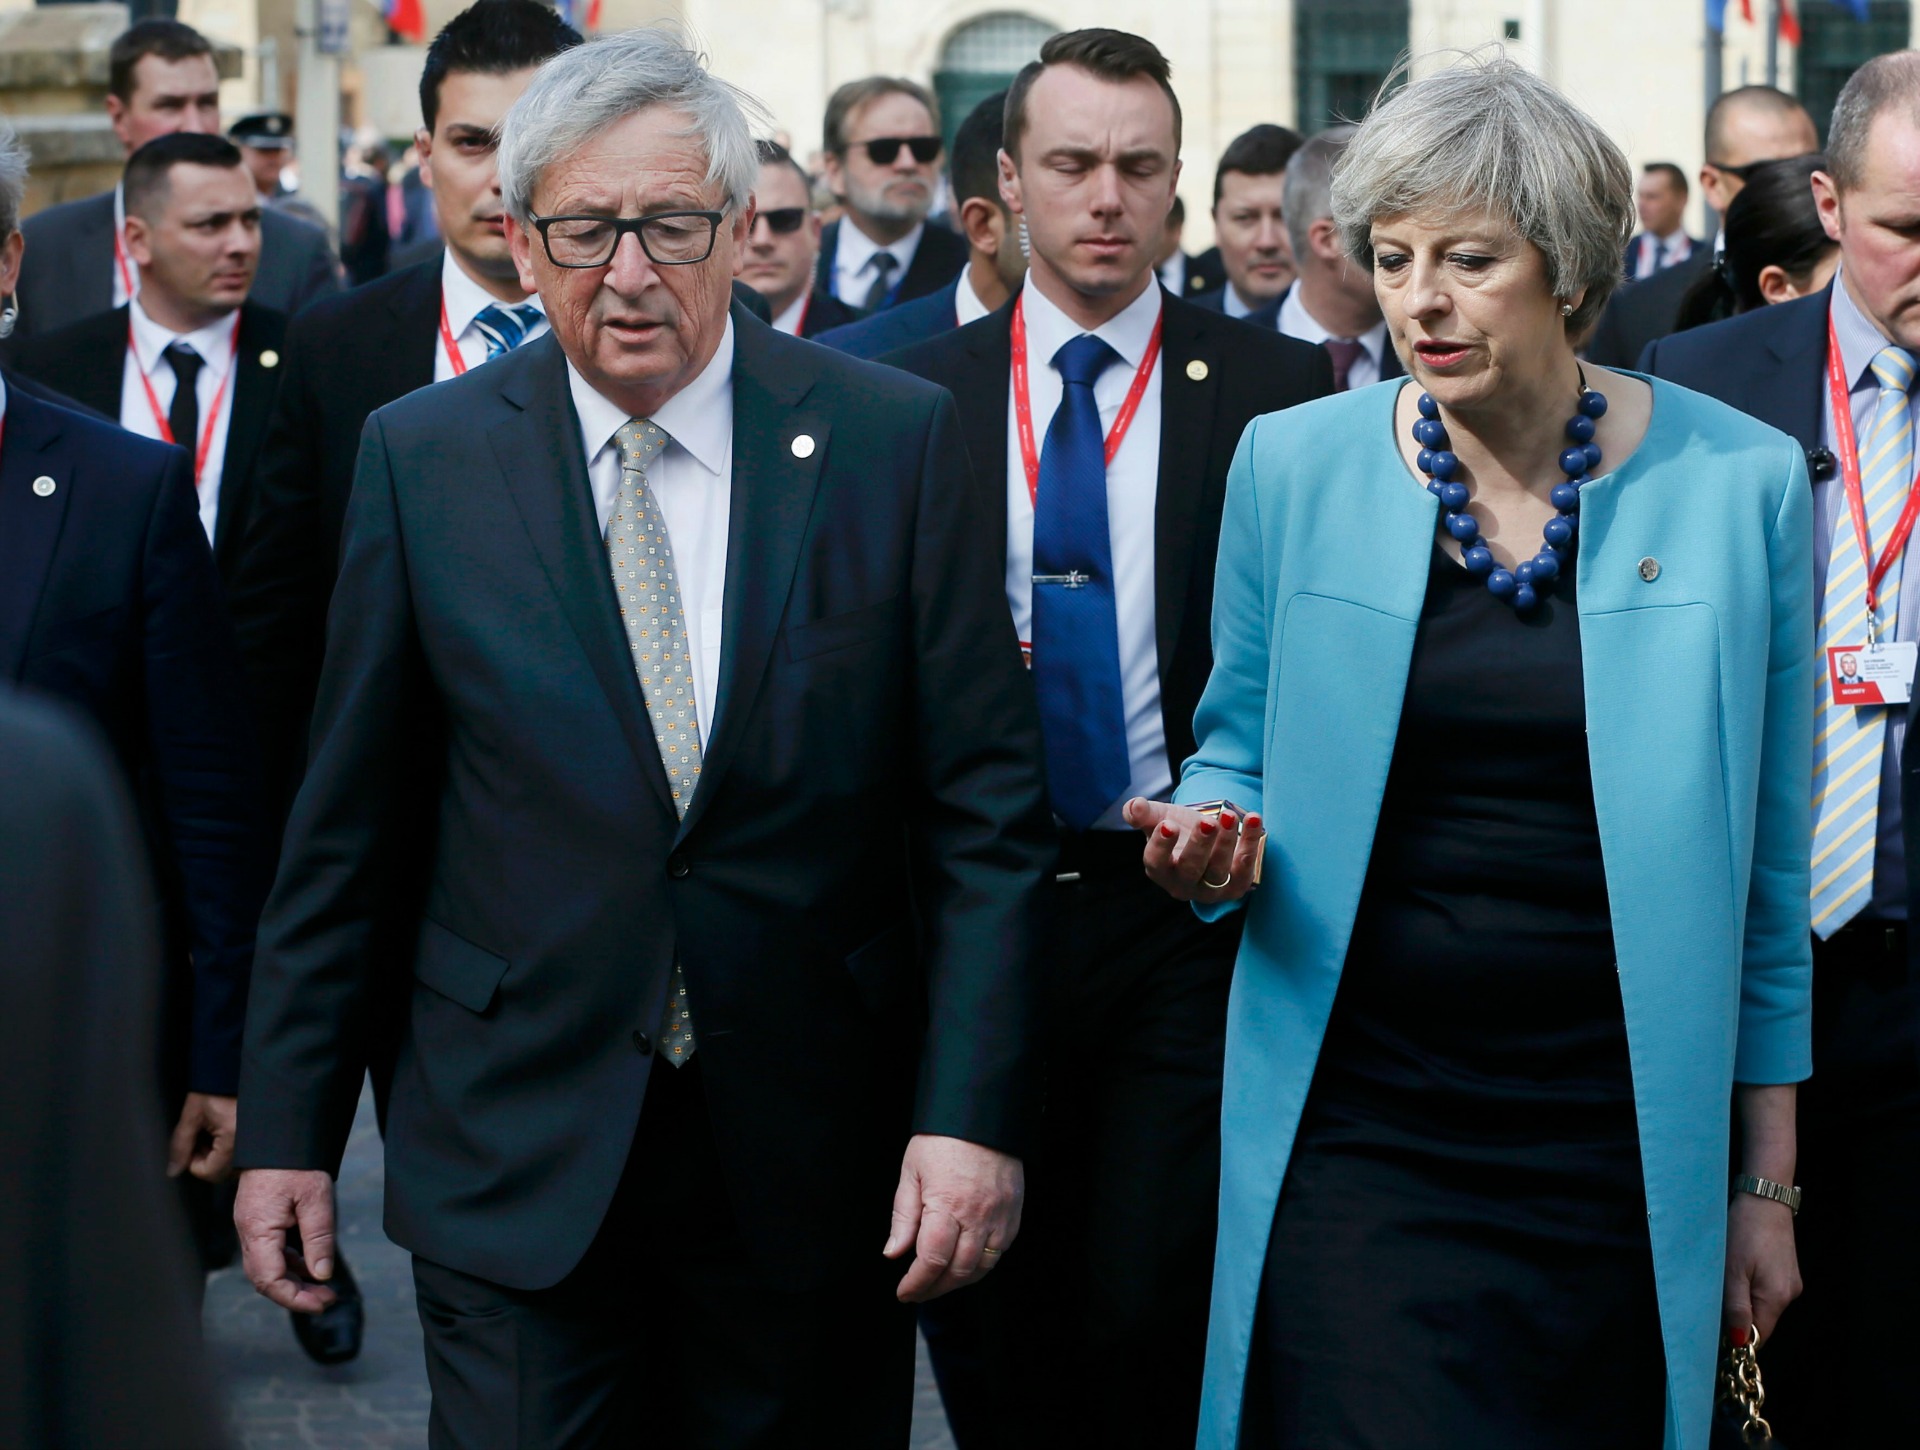 La factura del Brexit será "muy elevada" para Reino Unido, advierte Juncker